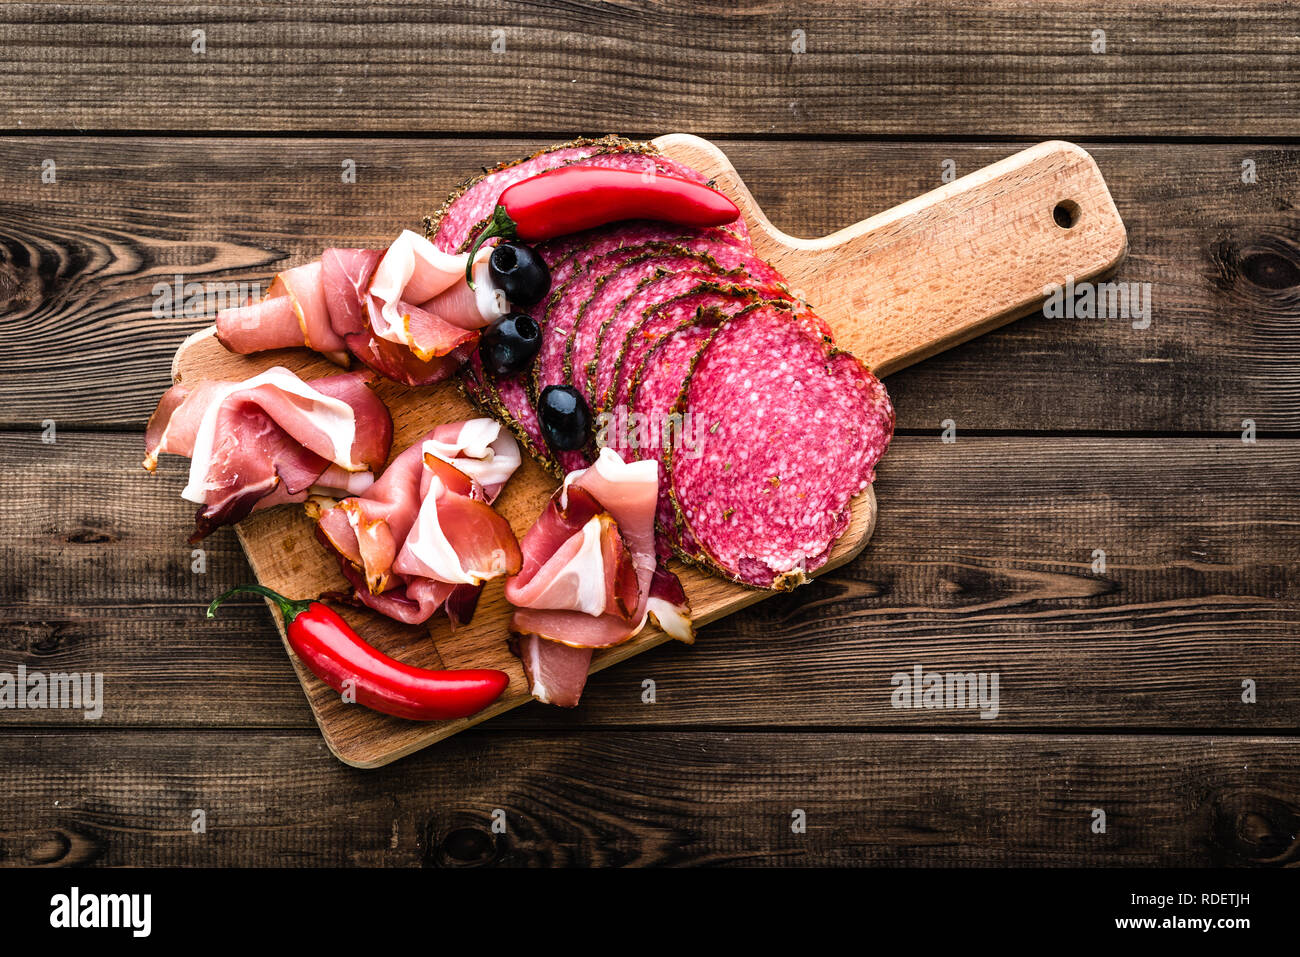 Carne fredda piatto con salame, fette di prosciutto, antipasti italiani sulla tavola di legno Foto Stock